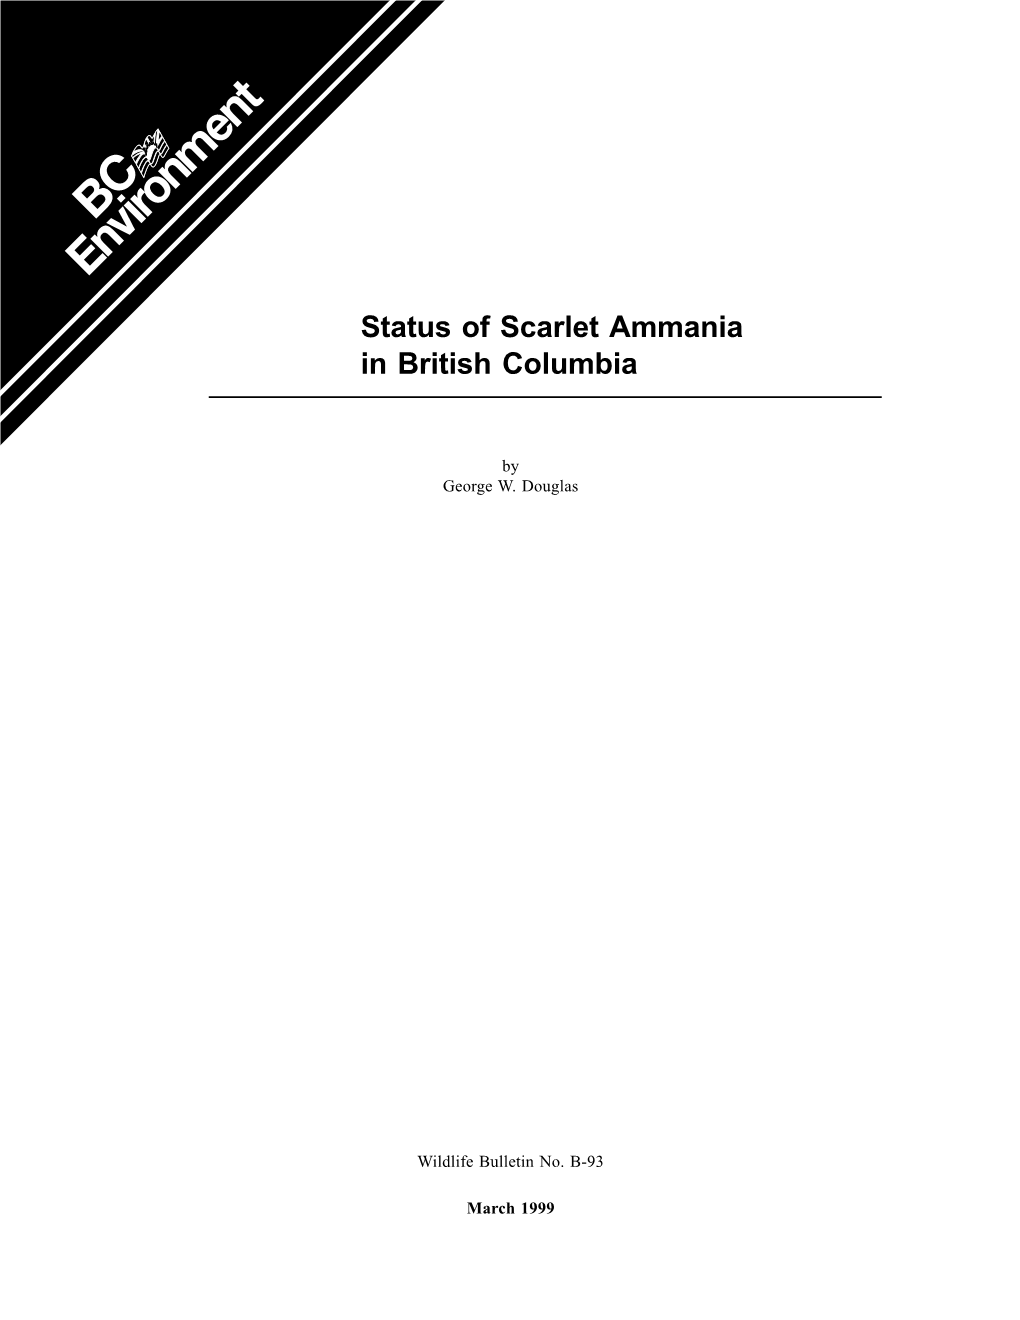 Status of Scarlet Ammannia in British Columbia